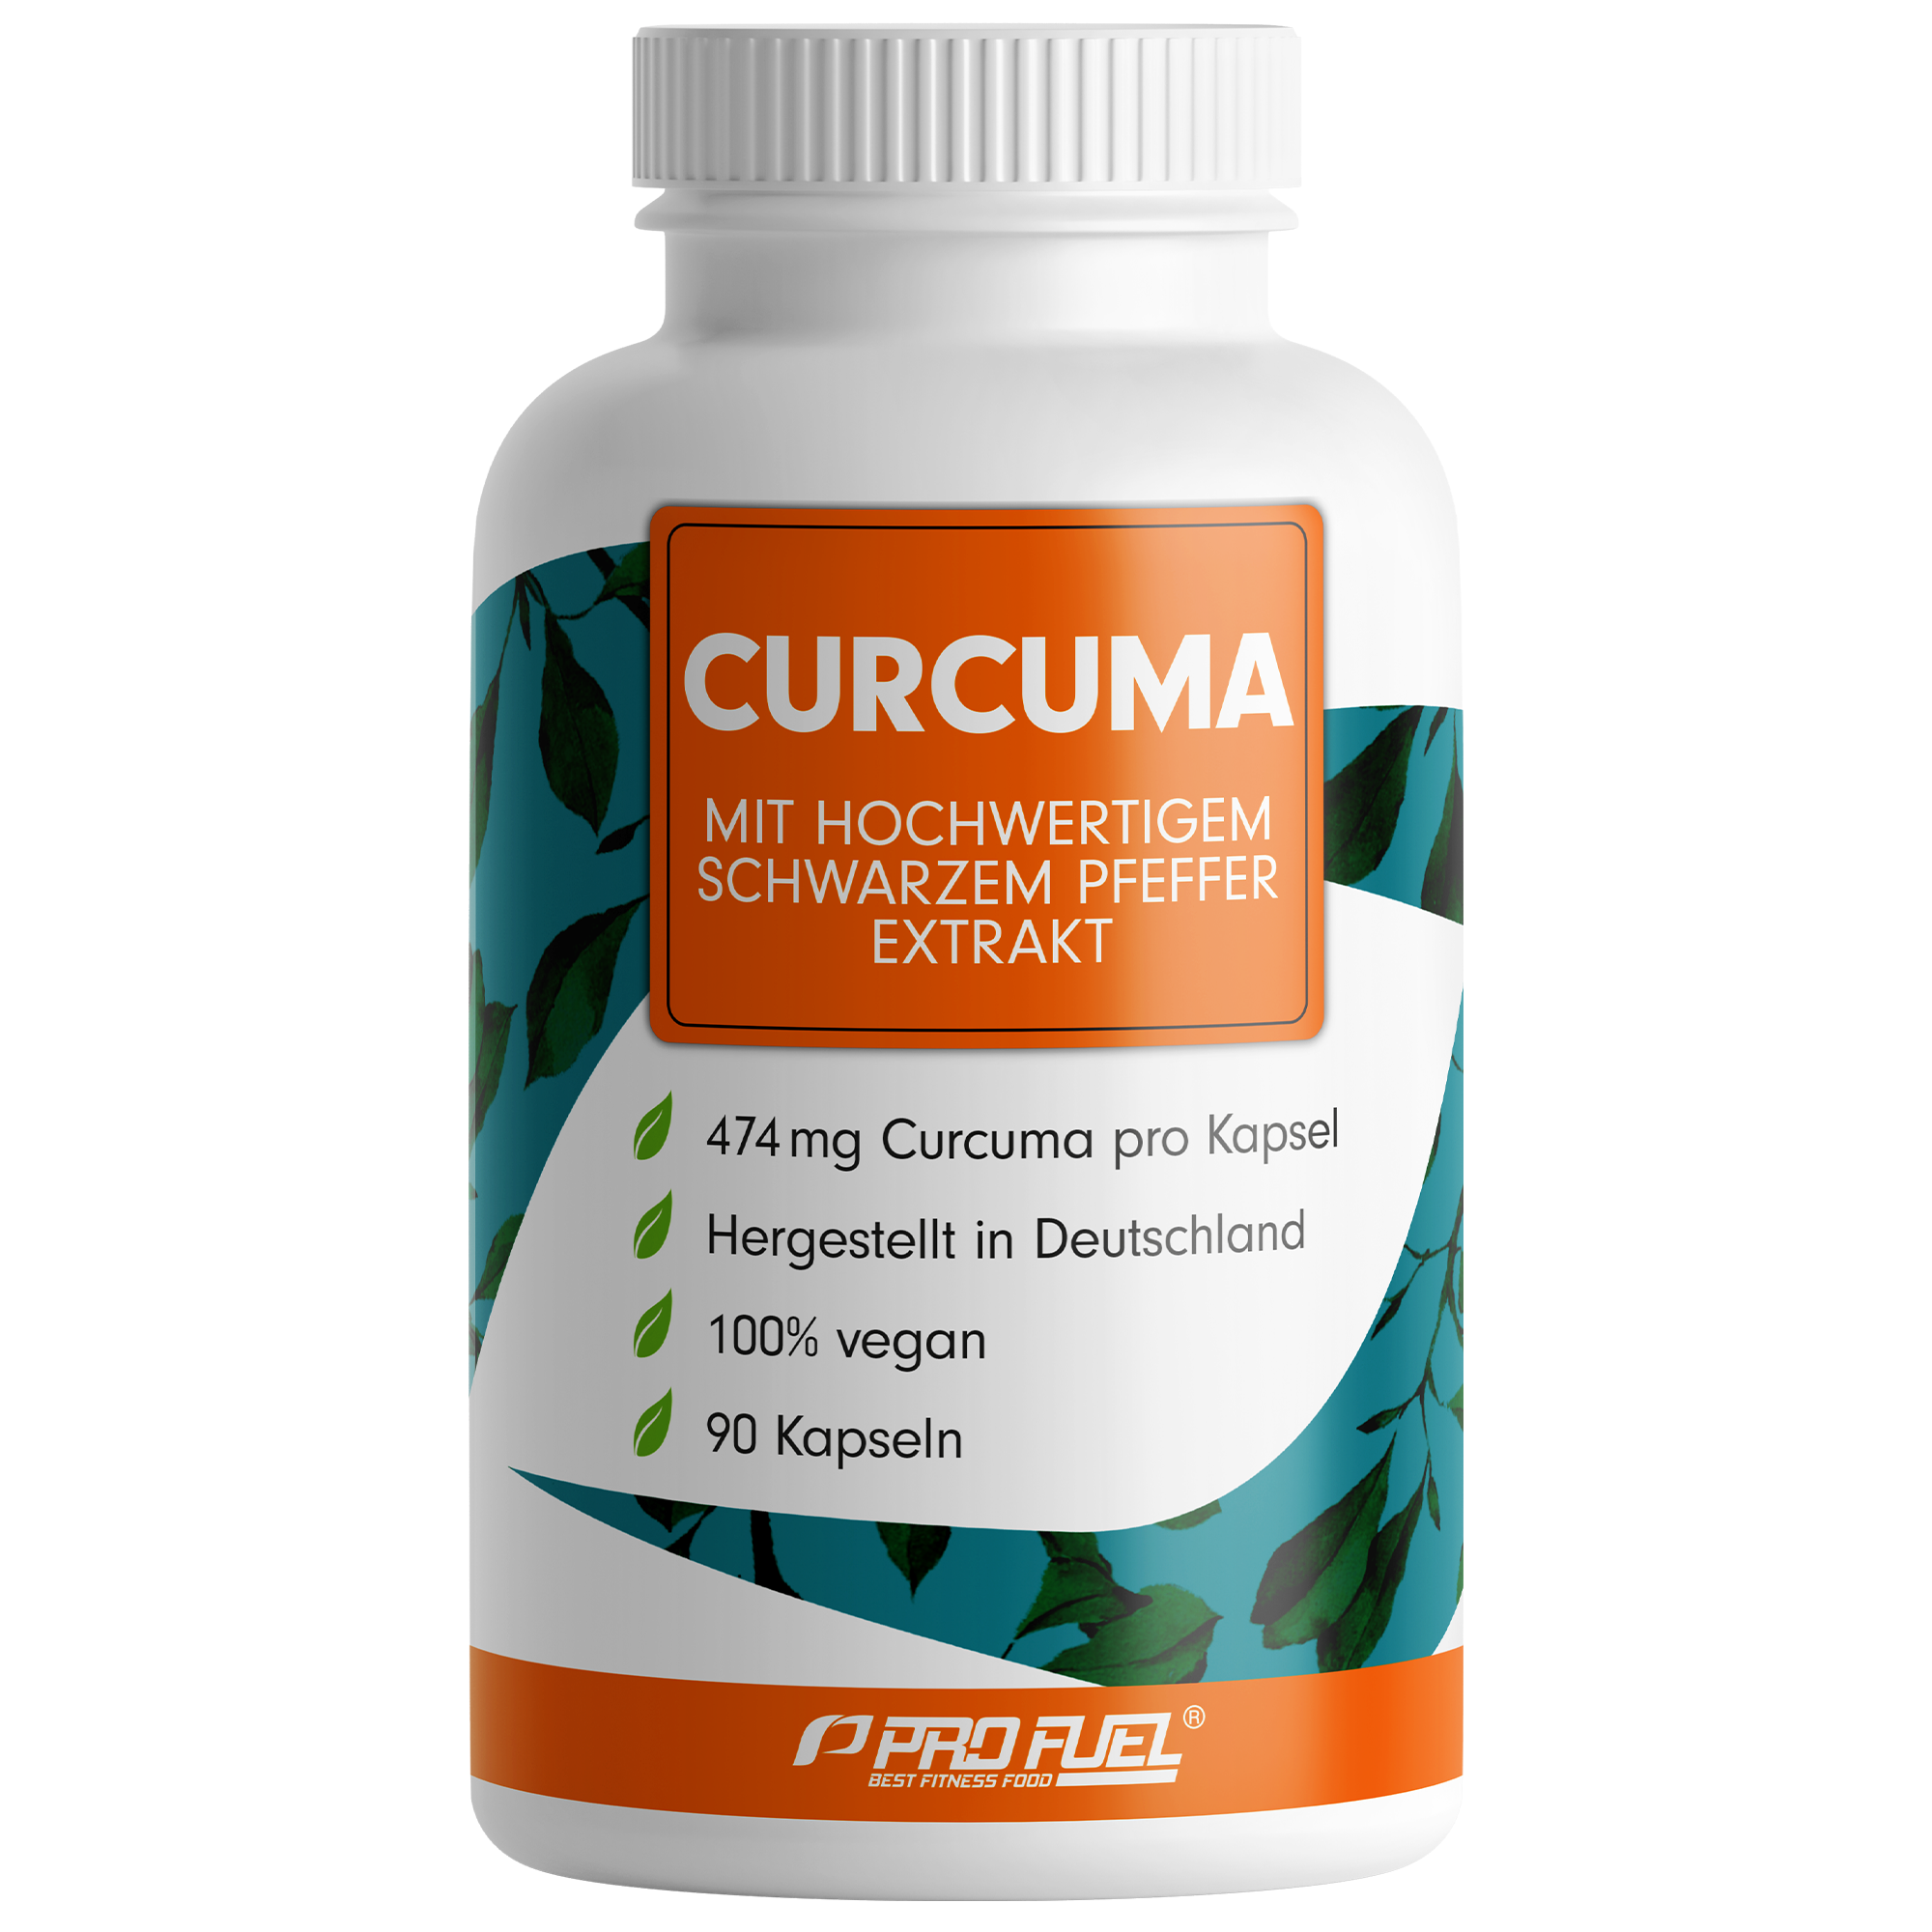 ProFuel Curcuma Extrakt | 90 Kapseln | mit hochwertigem schwarzem Pfefferextrakt | 100% natürliches Curcuma-Extrak | hochdosiert